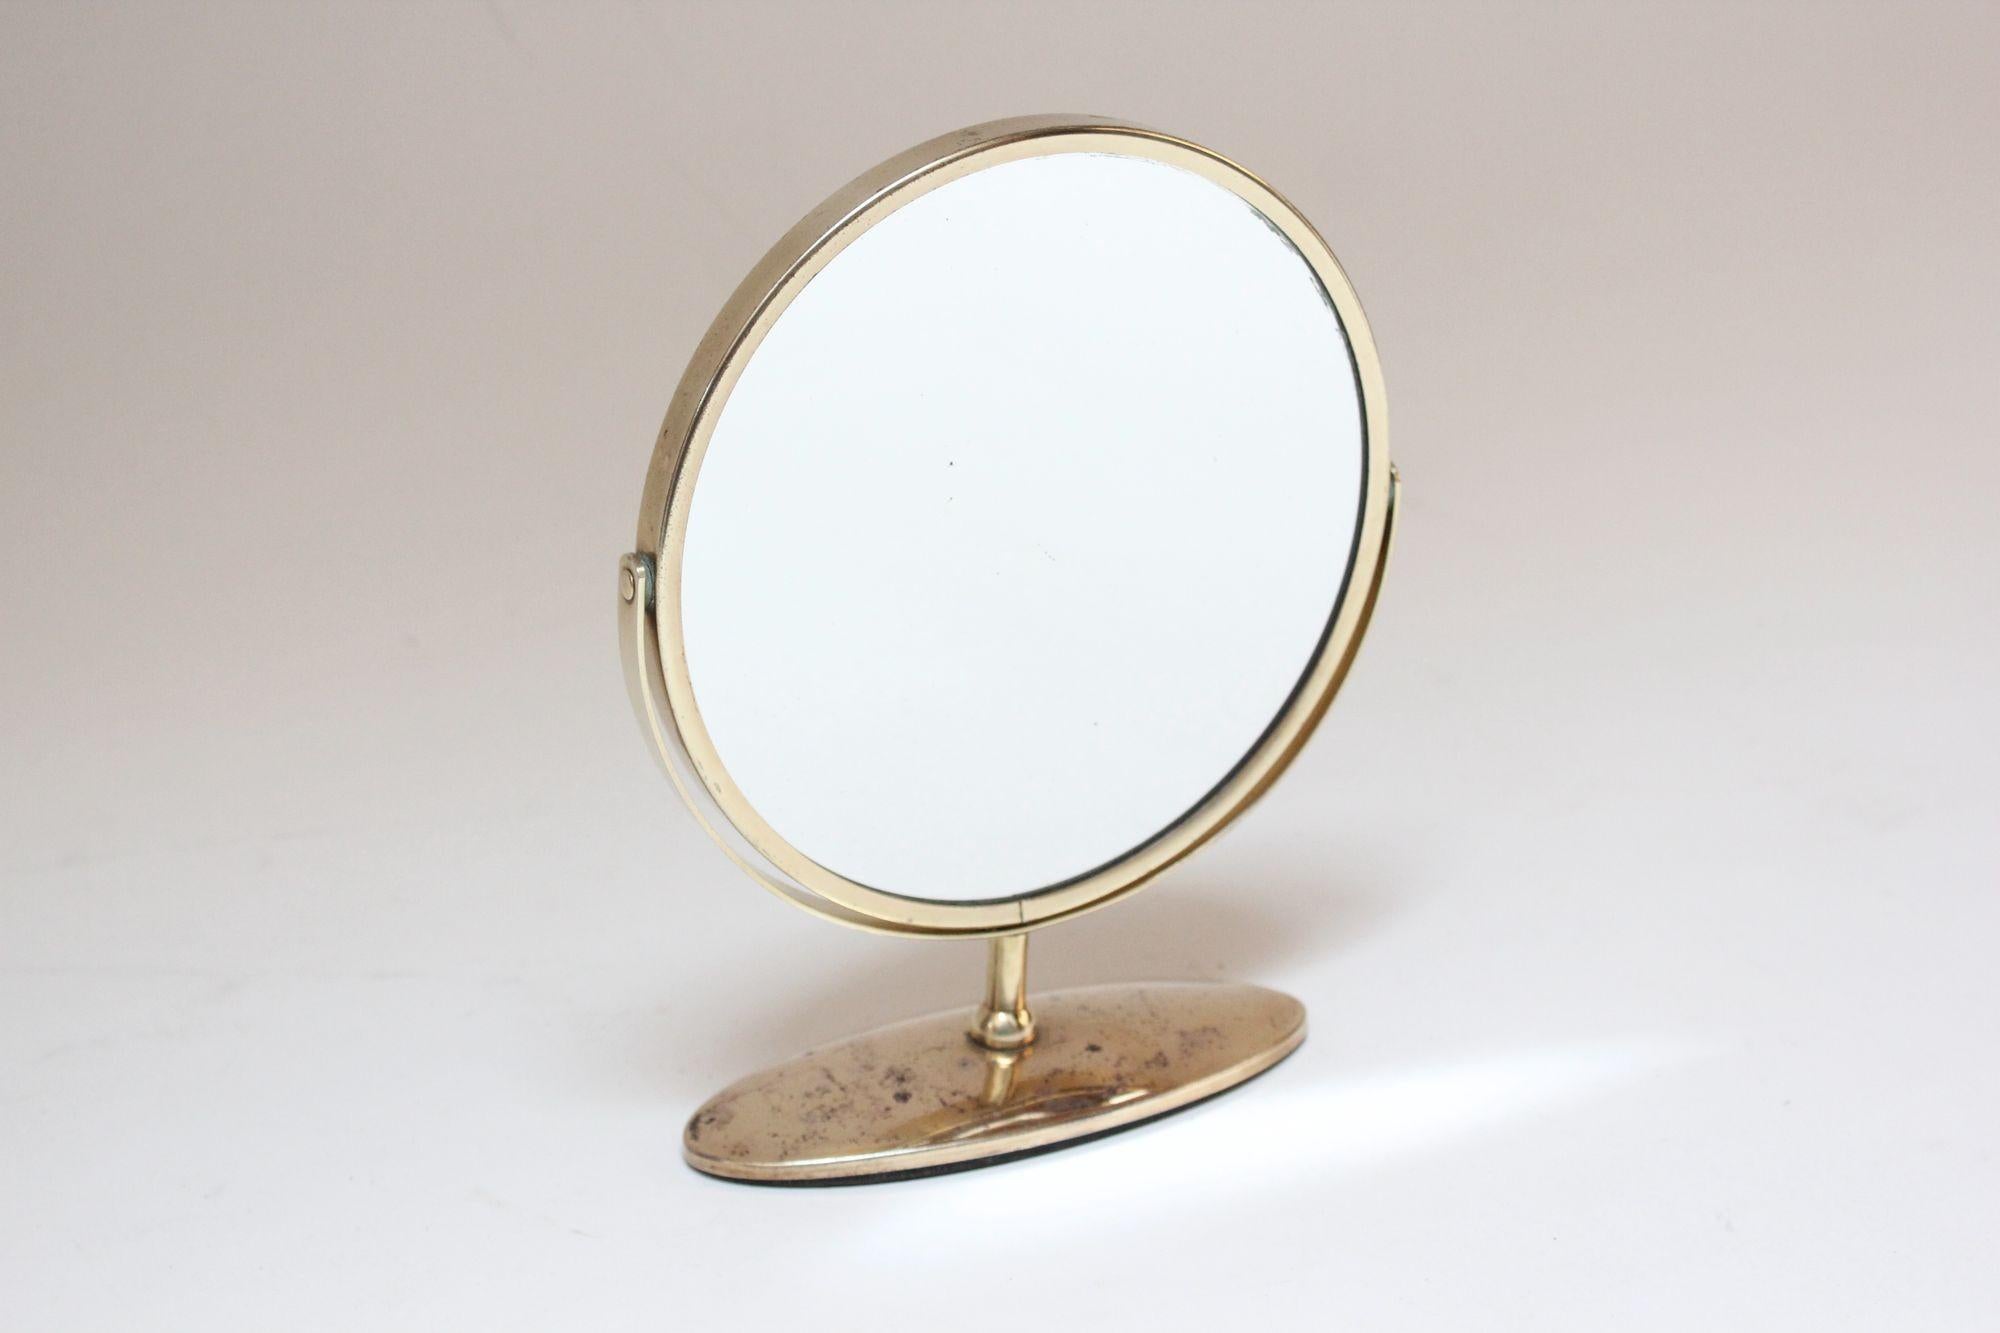 Eleganter und zierlicher Tisch-/Verkleidungsspiegel aus Messing (ca. 1950er Jahre, USA).
Der Spiegel hat zwei Glasseiten und kann von einer Seite zur anderen geschwenkt werden.
Das Messing wurde neu poliert, aber es sind noch Anlaufspuren vorhanden